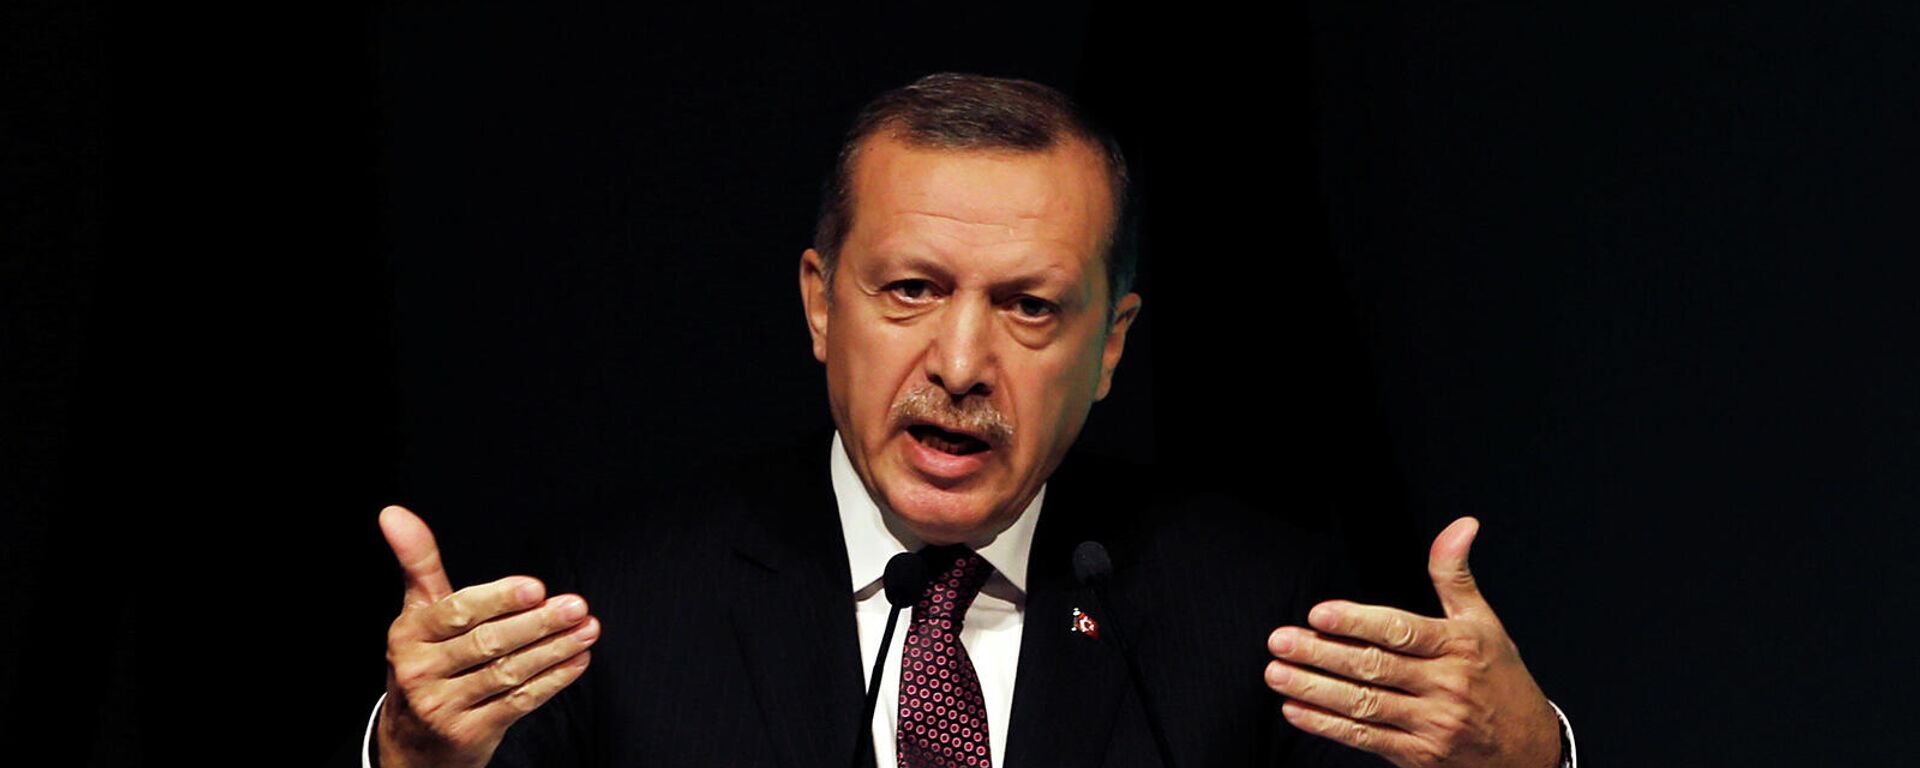 Премьер-миистр Турции Реджеп Тайип Эрдоган выступает с речью на симпозиуме по глобальной политике в отношении алкоголя (26 апреля 2013). Стамбул - Sputnik Армения, 1920, 03.12.2021